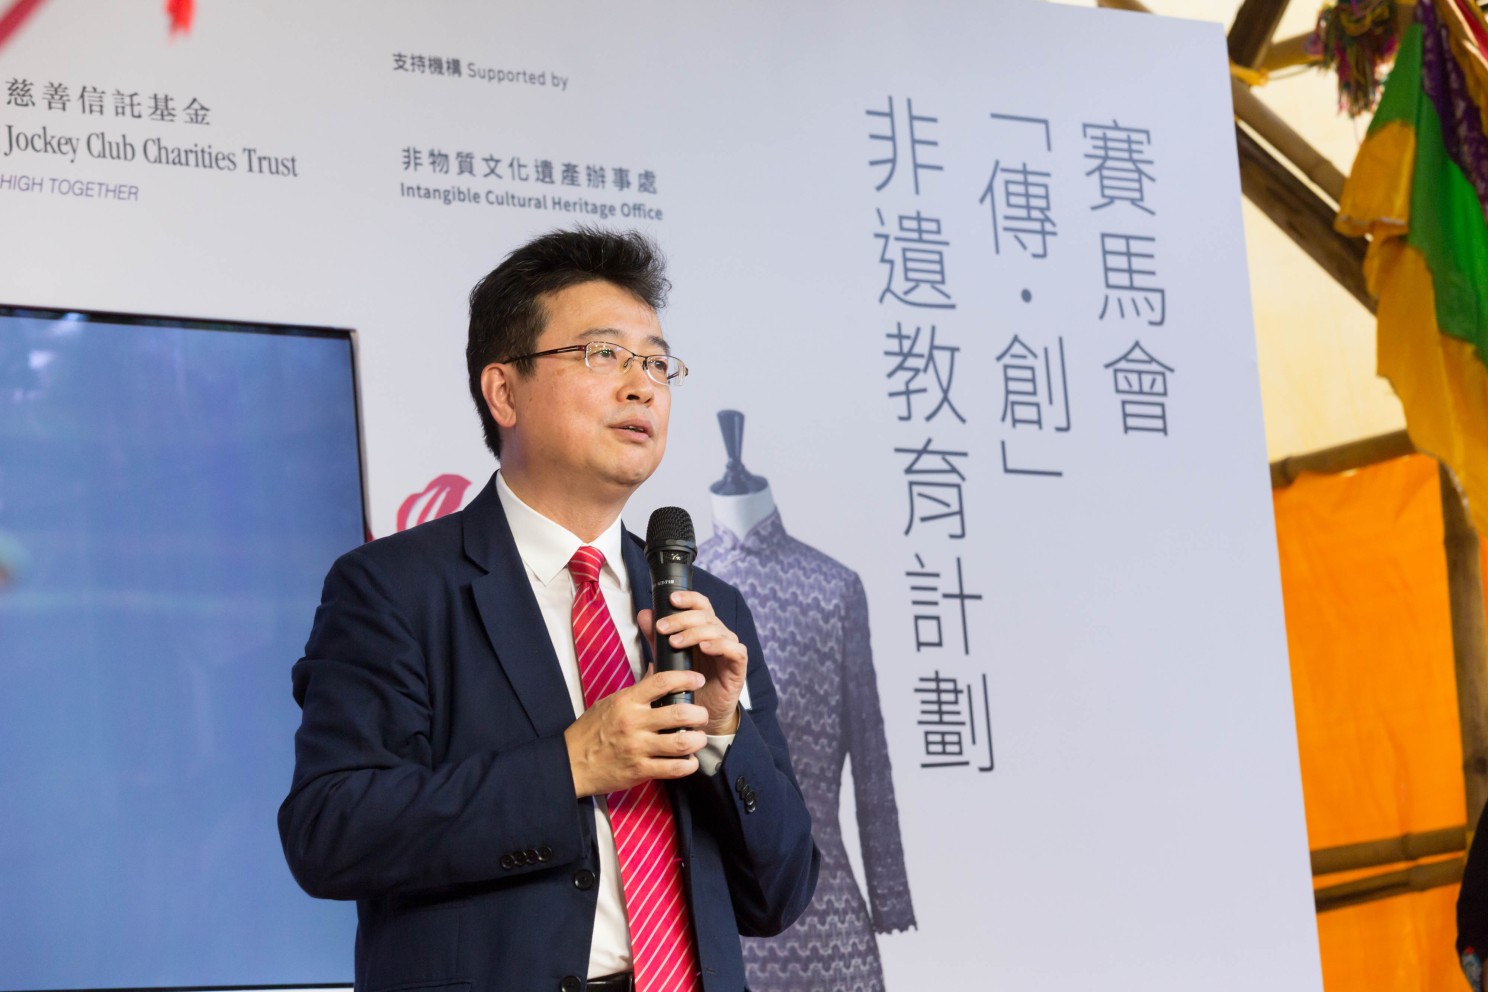 刘智鹏教授一直致力透过知识转移项目，保育香港的非物质文化遗产及历史。